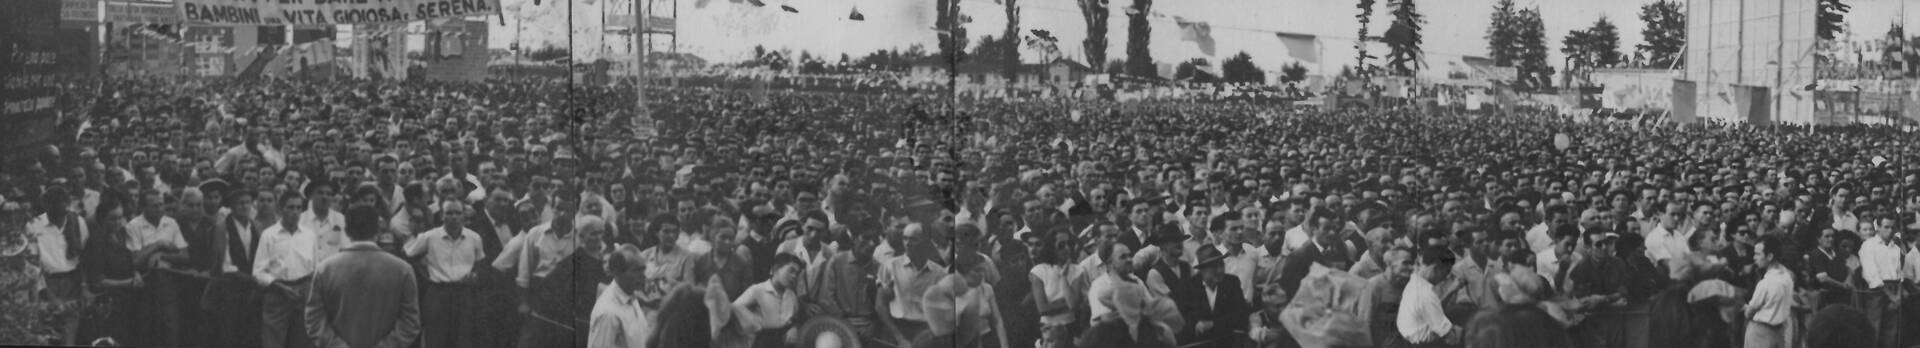 festa unita reggio emilia 1951